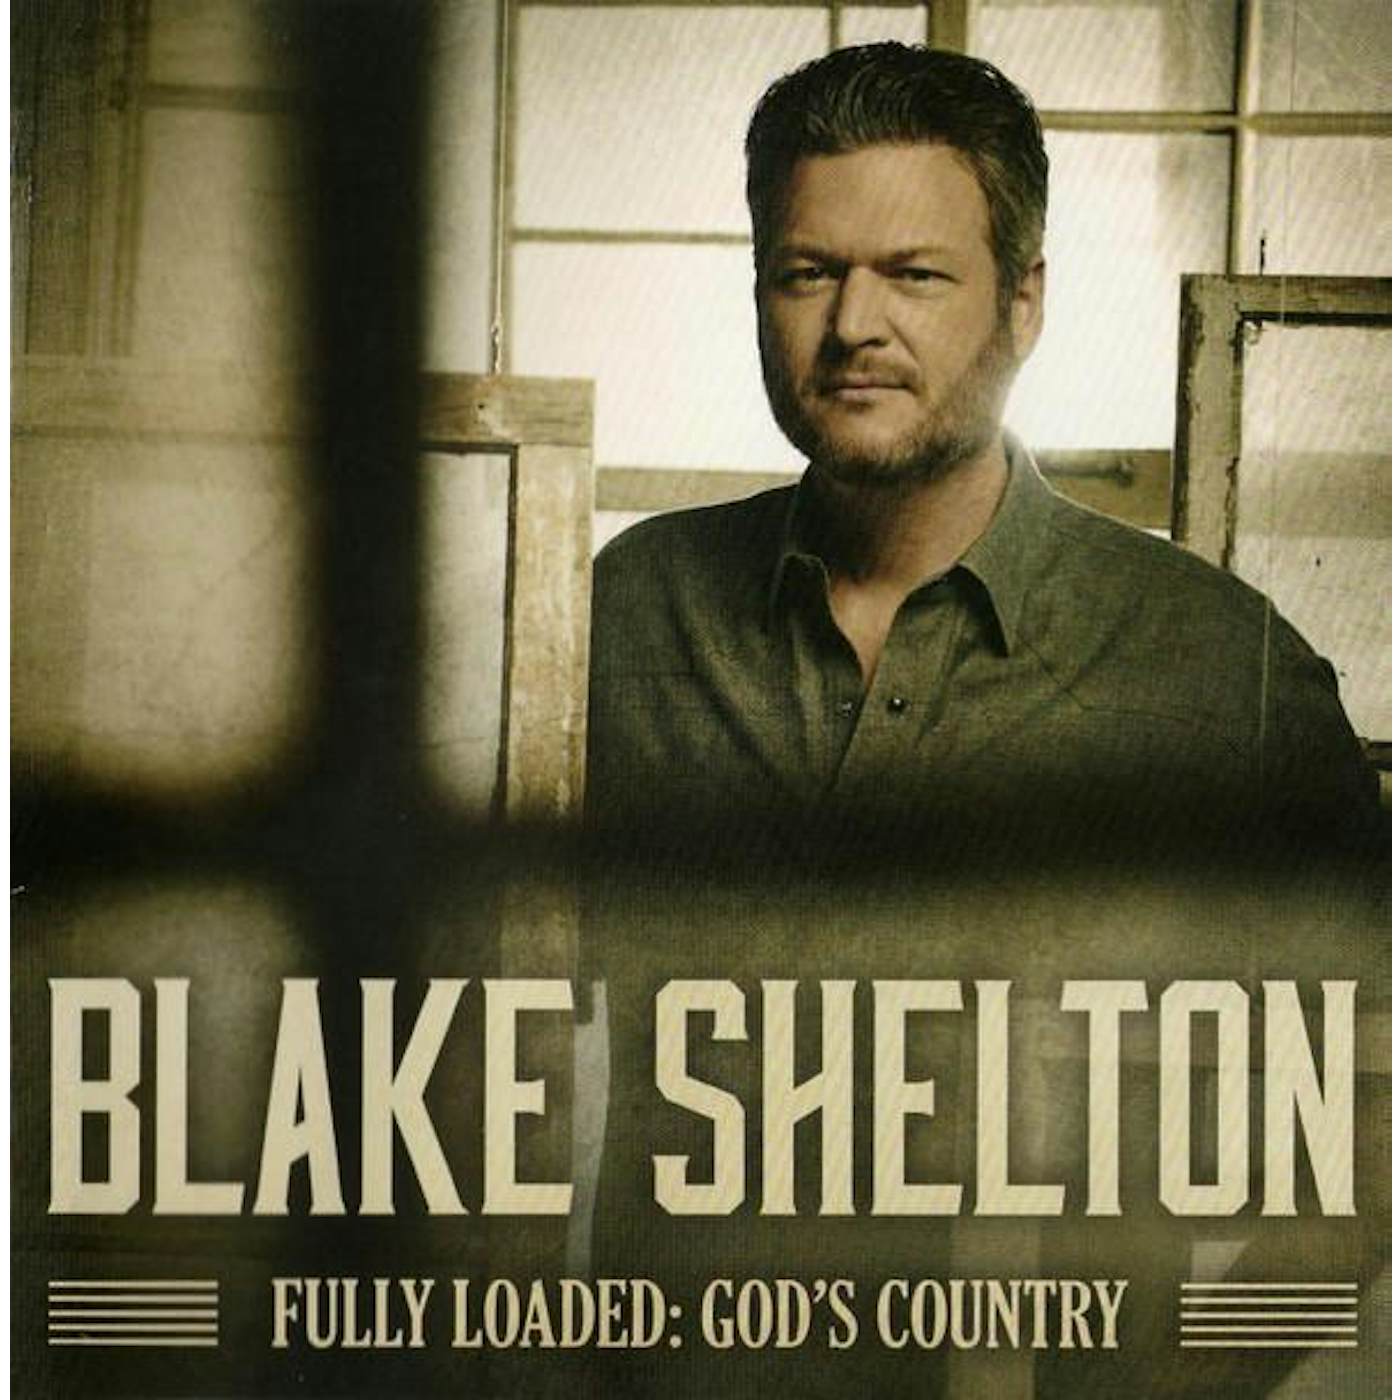 Blake Shelton FULLY LOADED: GOD'S COUNTRY CD